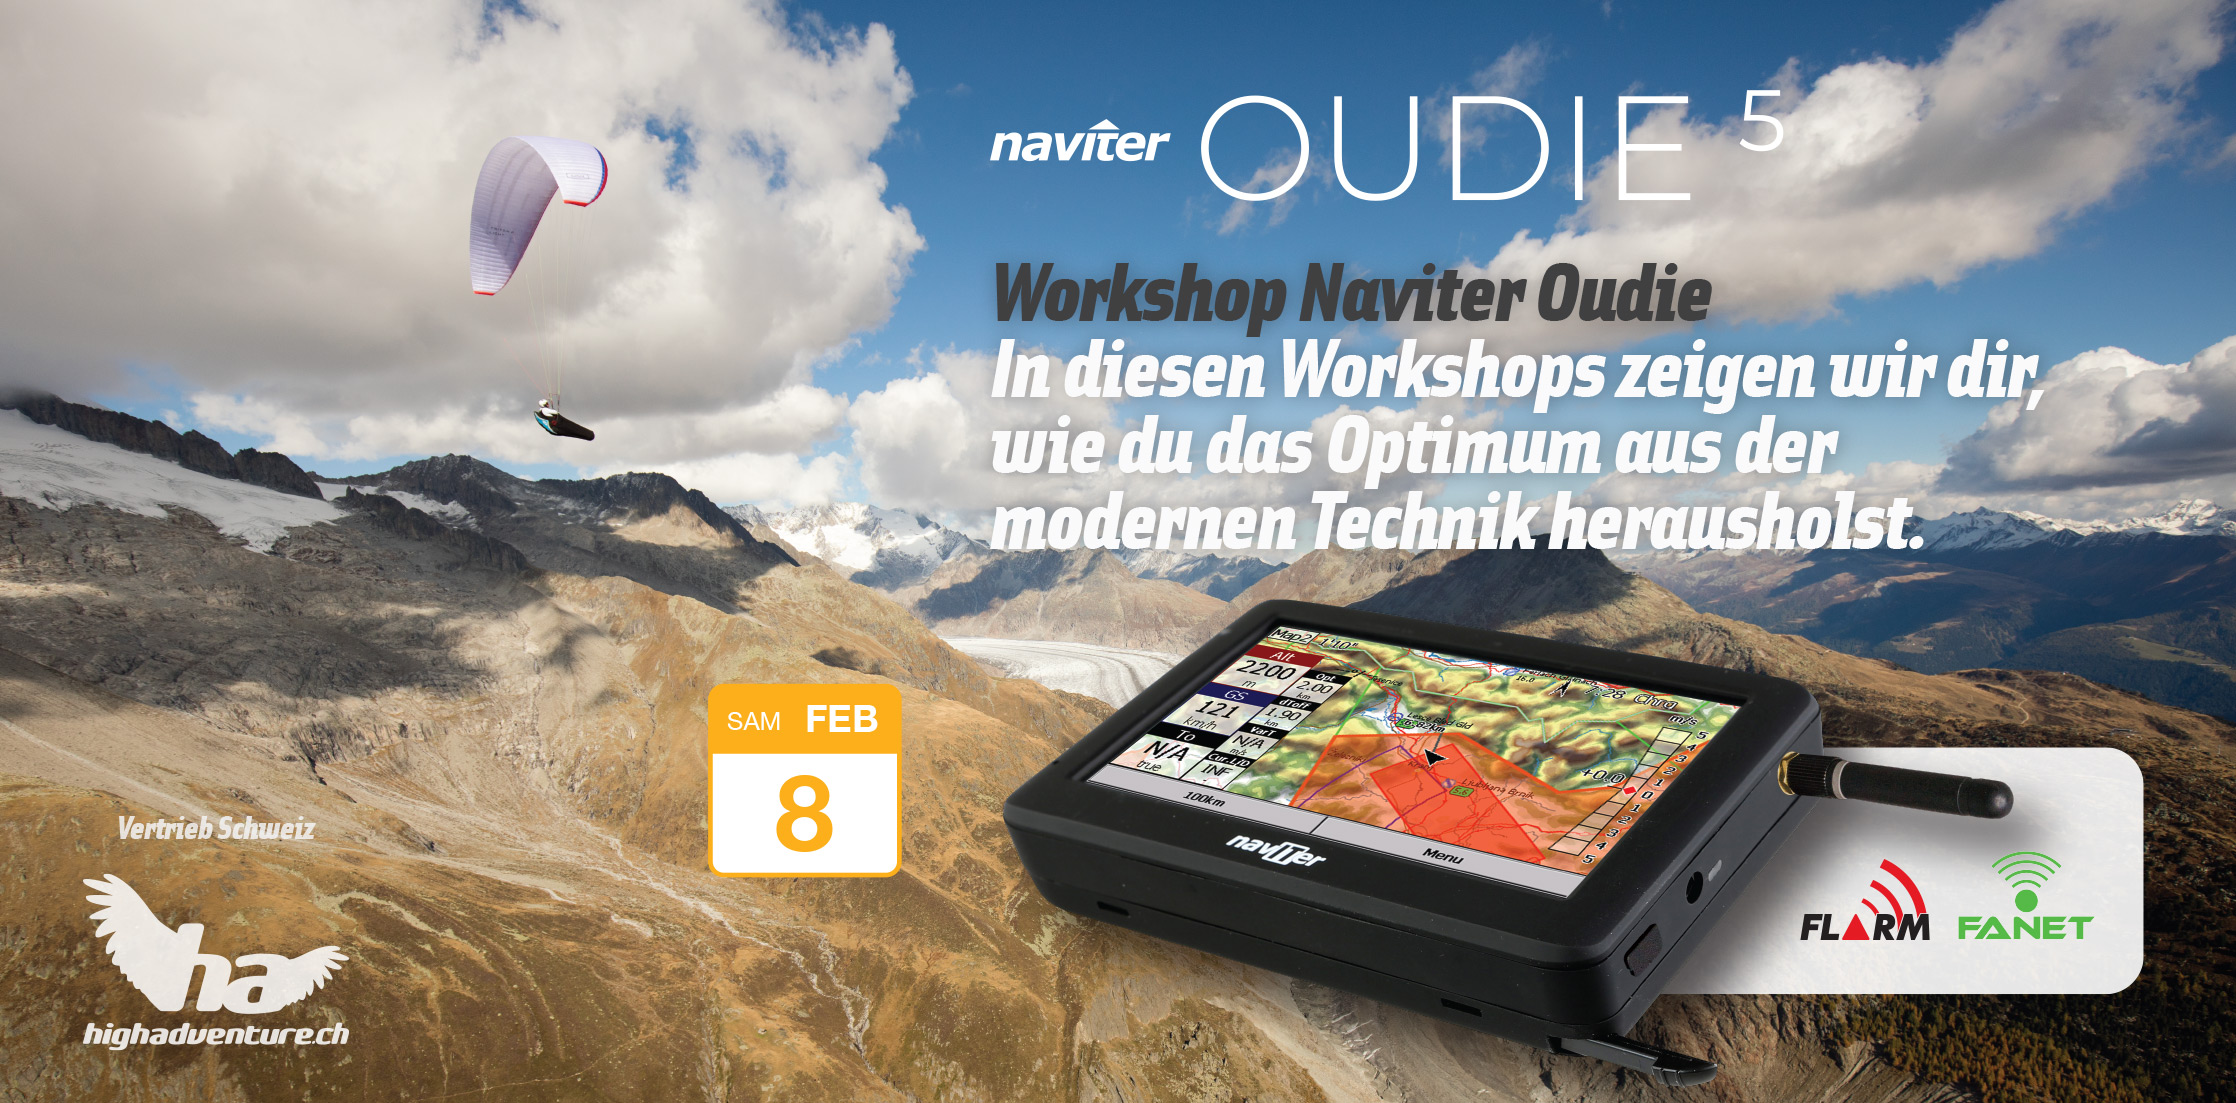 Workshop Oudie5 08 Feb 2020